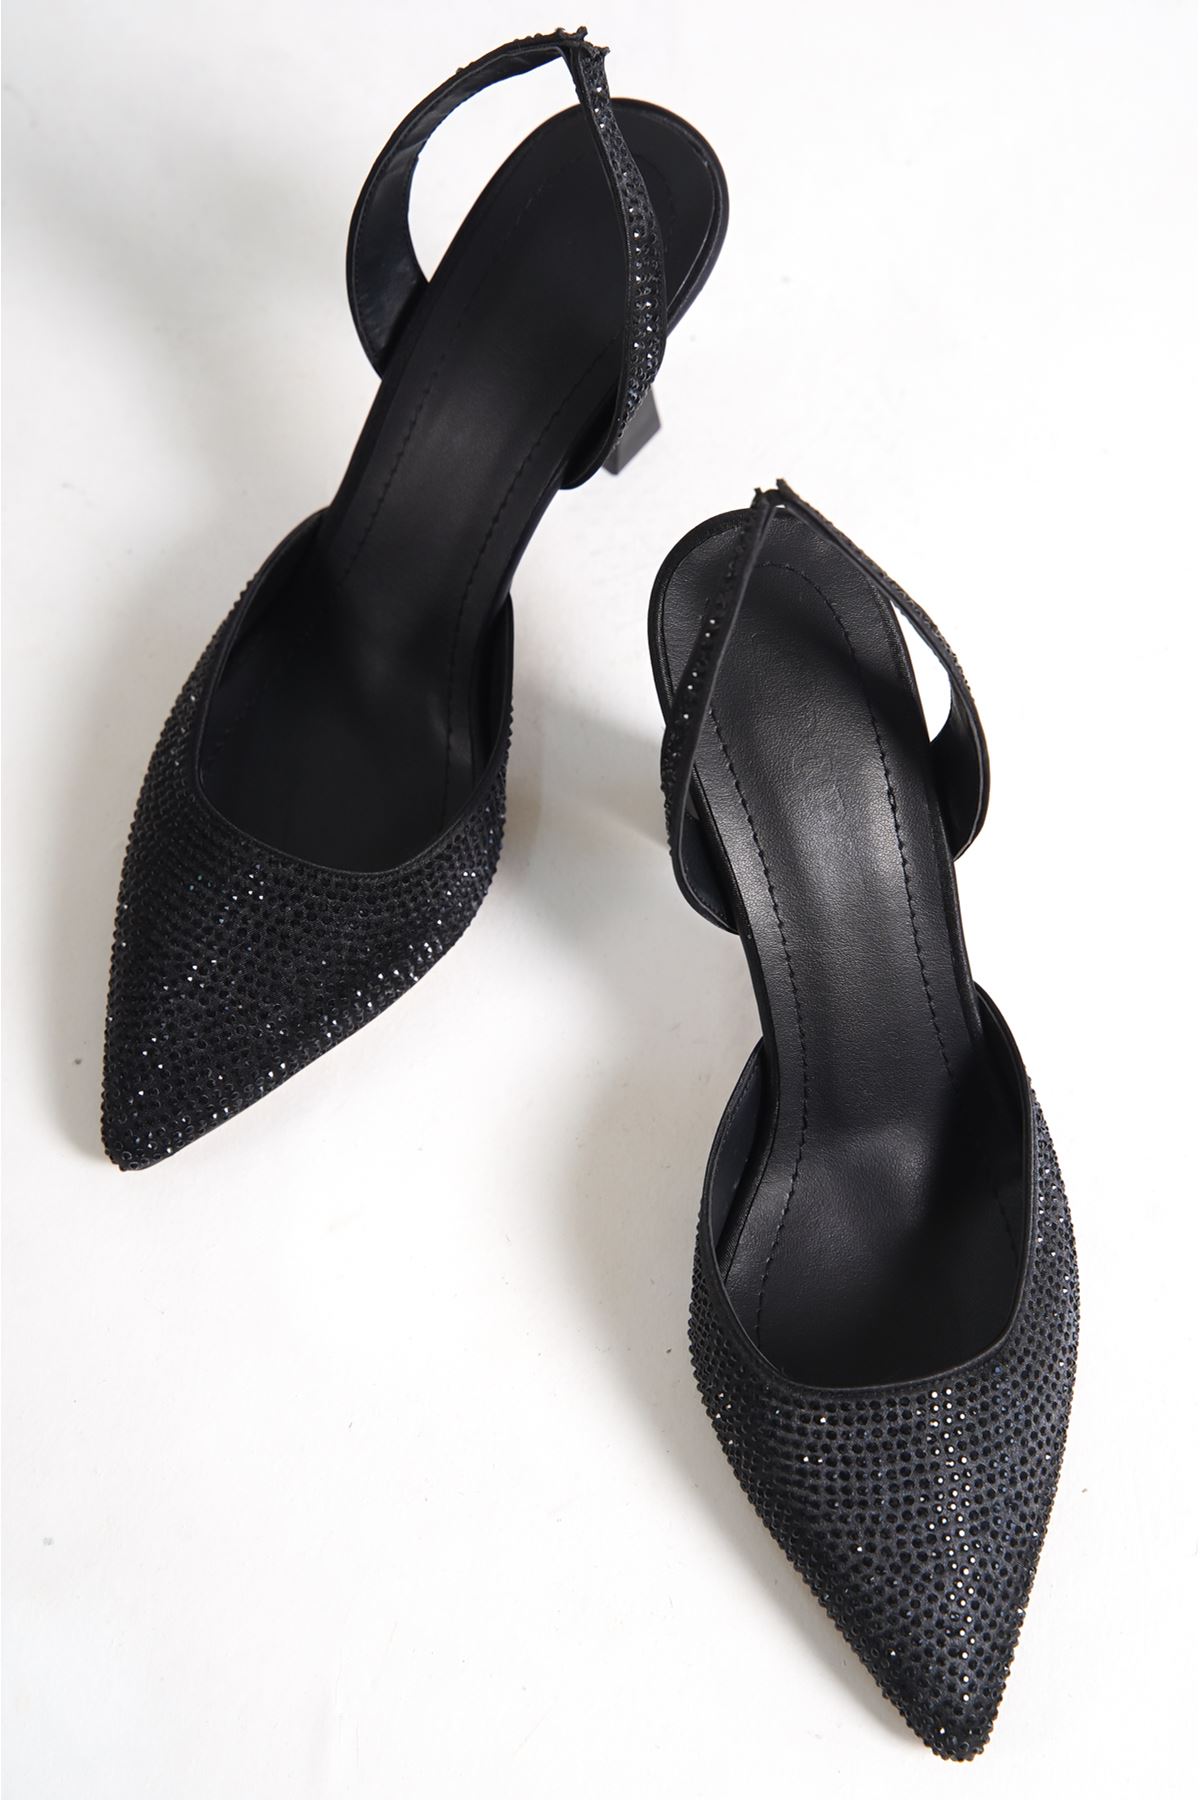 Derek Siyah Taşlı Topuklu Kadın Ayakkabı